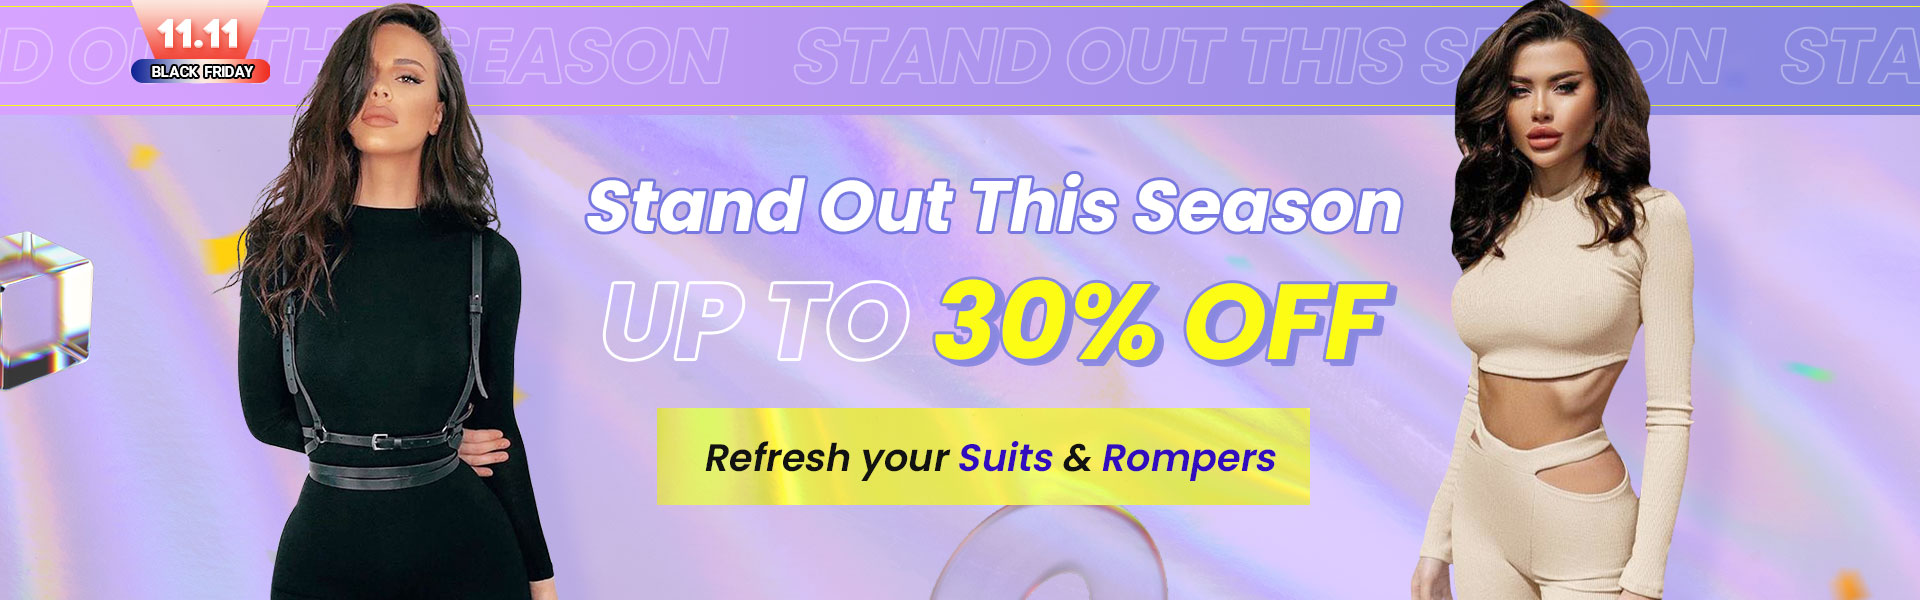 Suits & Romper Sale